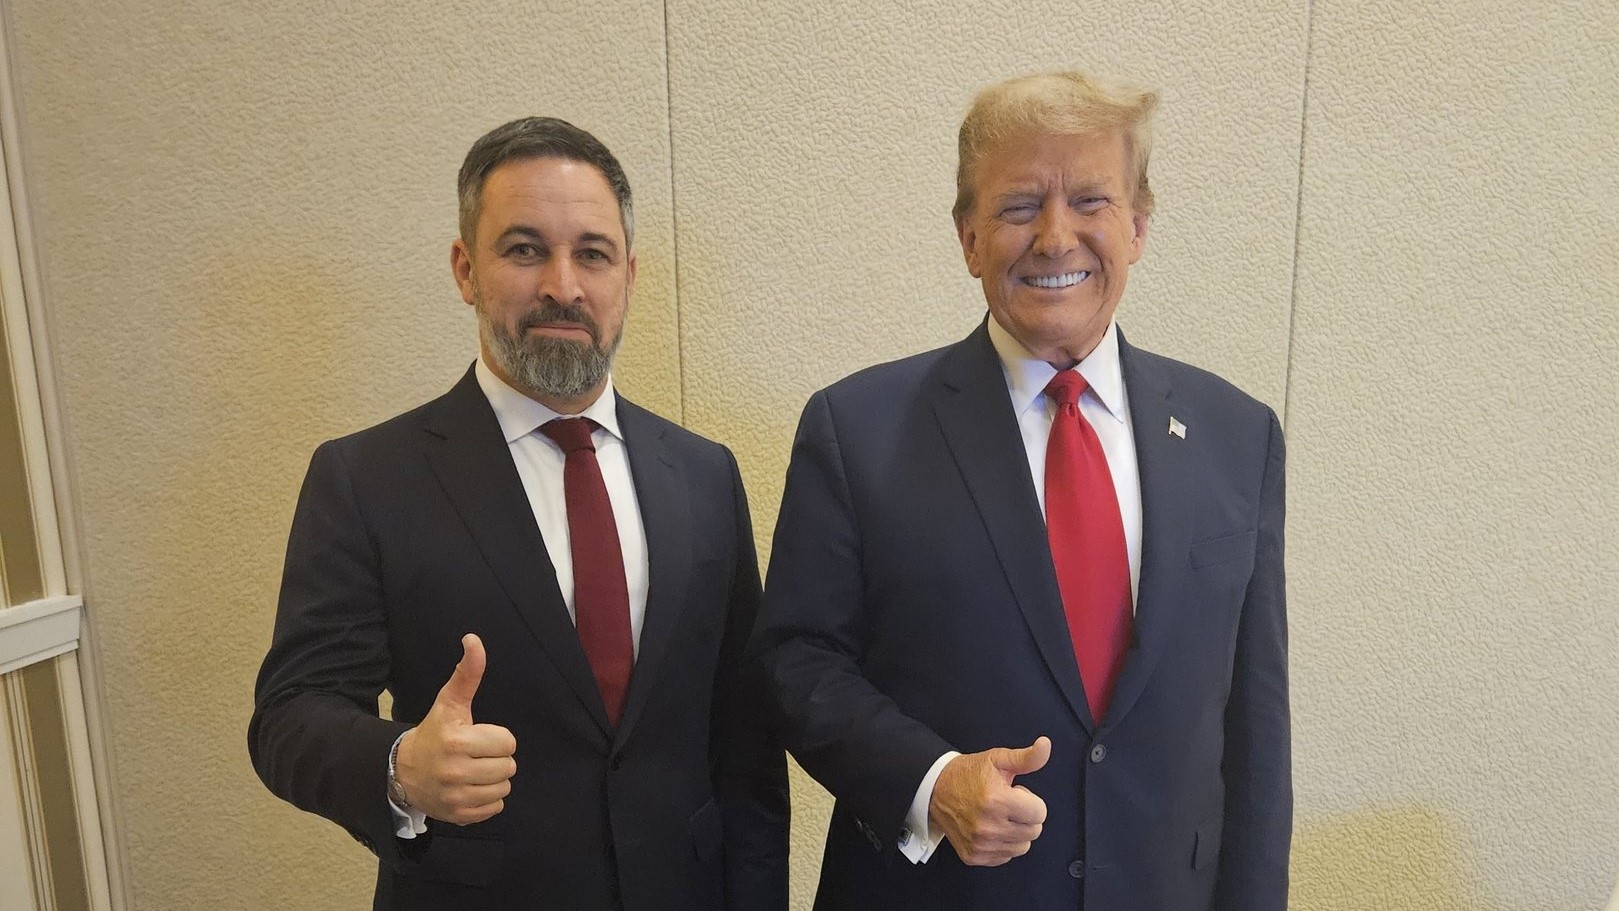 O líder de Vox xunto a Donald Trump, nunha foto feita tras a súa reunión (Twtitter @santi_abascal)